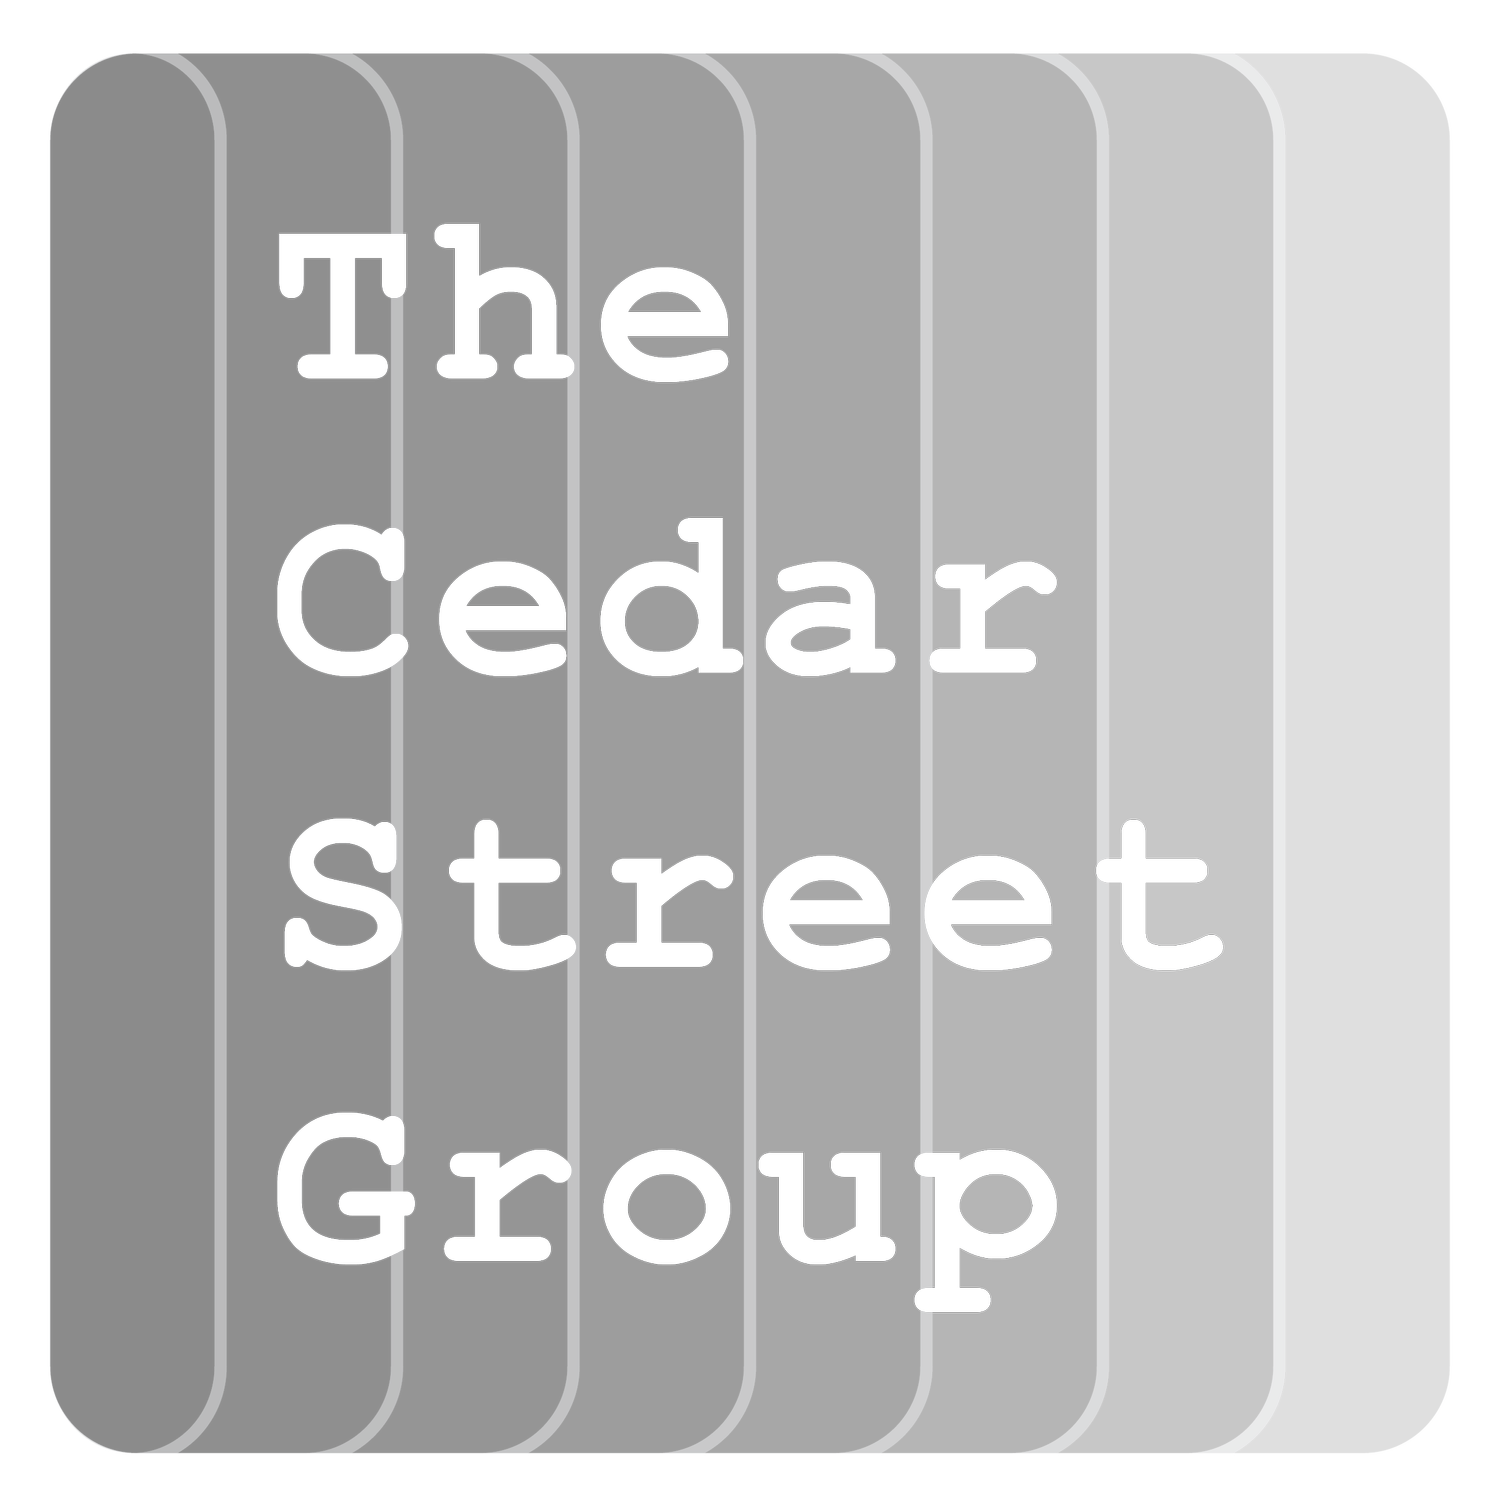 The Cedar Street Group